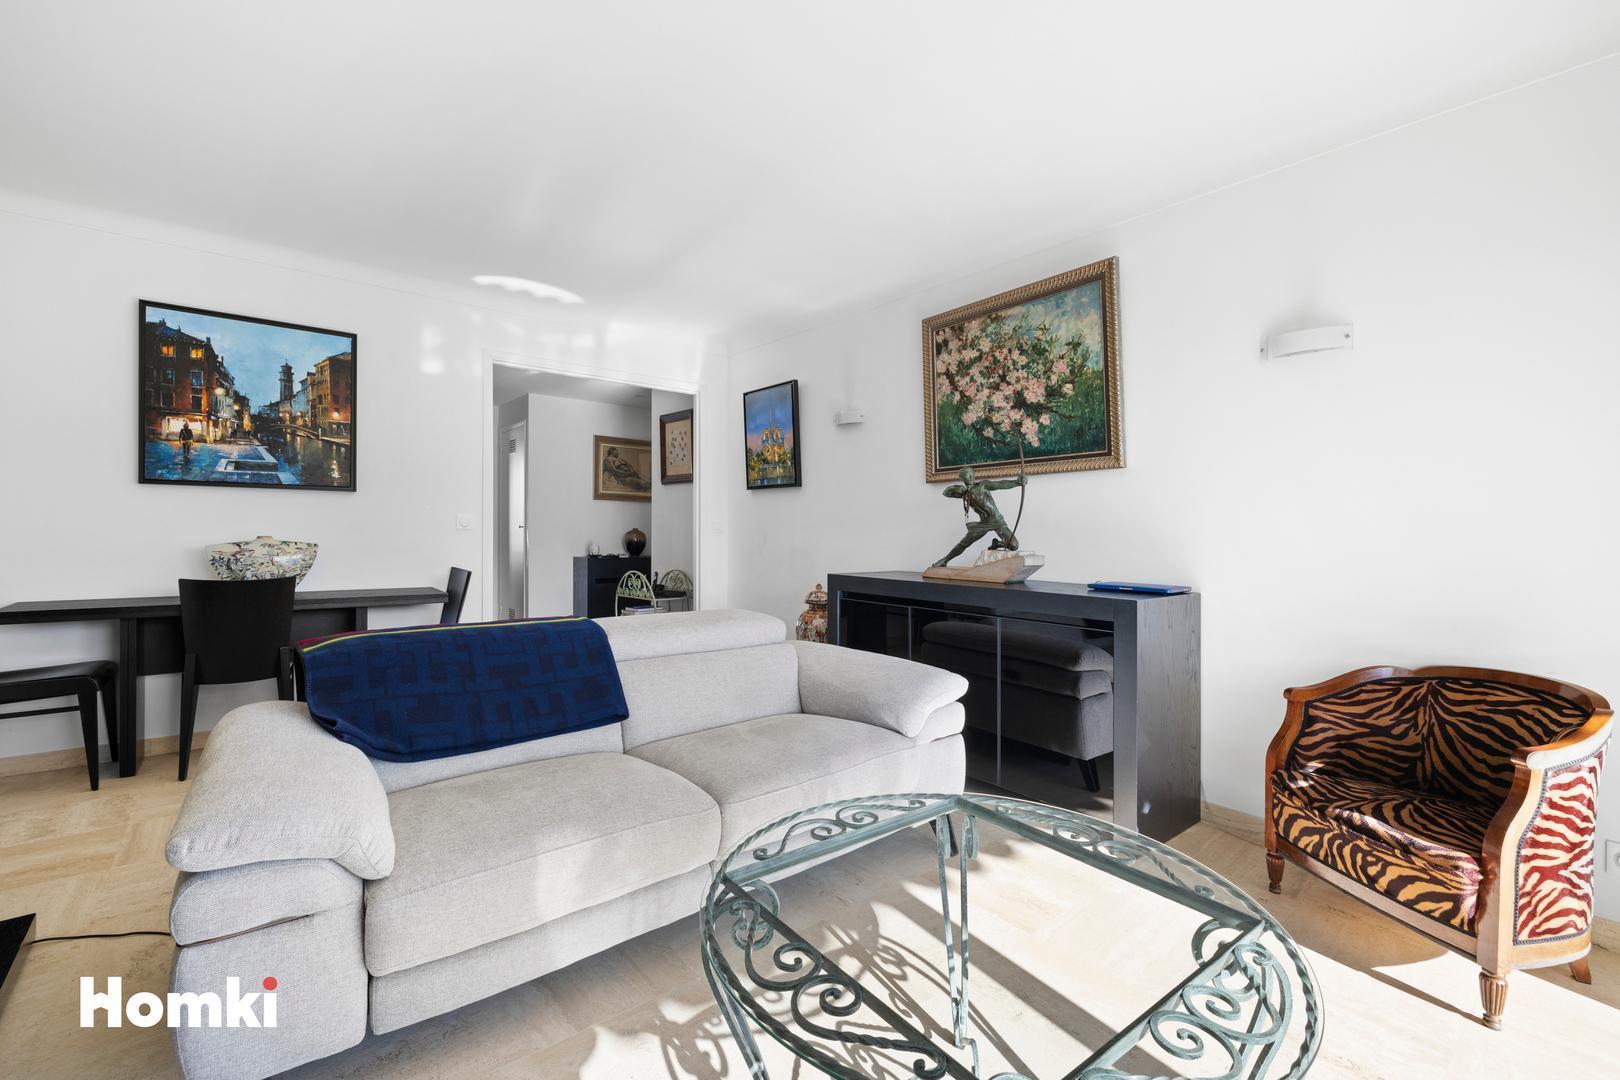 Homki - Vente Appartement  de 71.0 m² à Cannes 06400